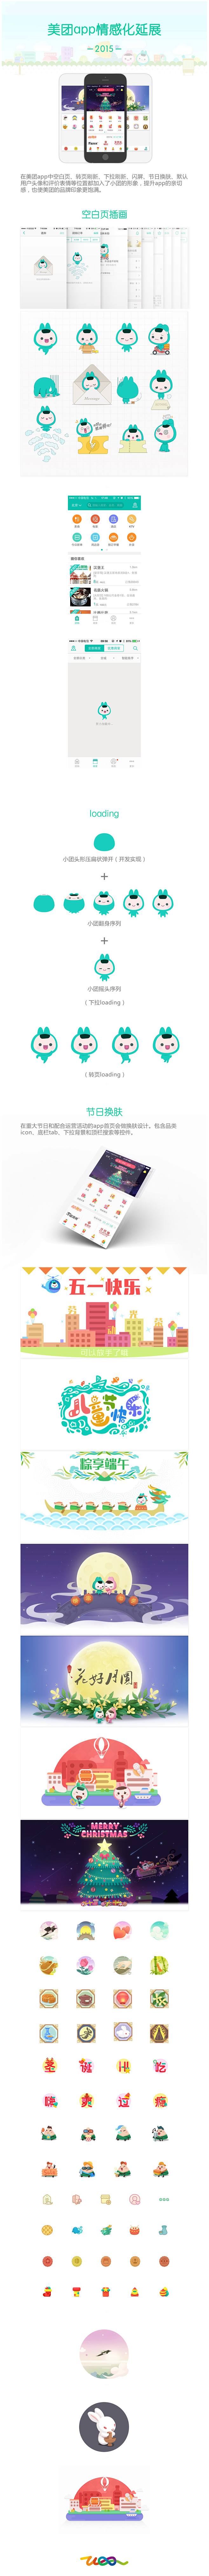 美团app情感化延展设计-UI中国-专业...